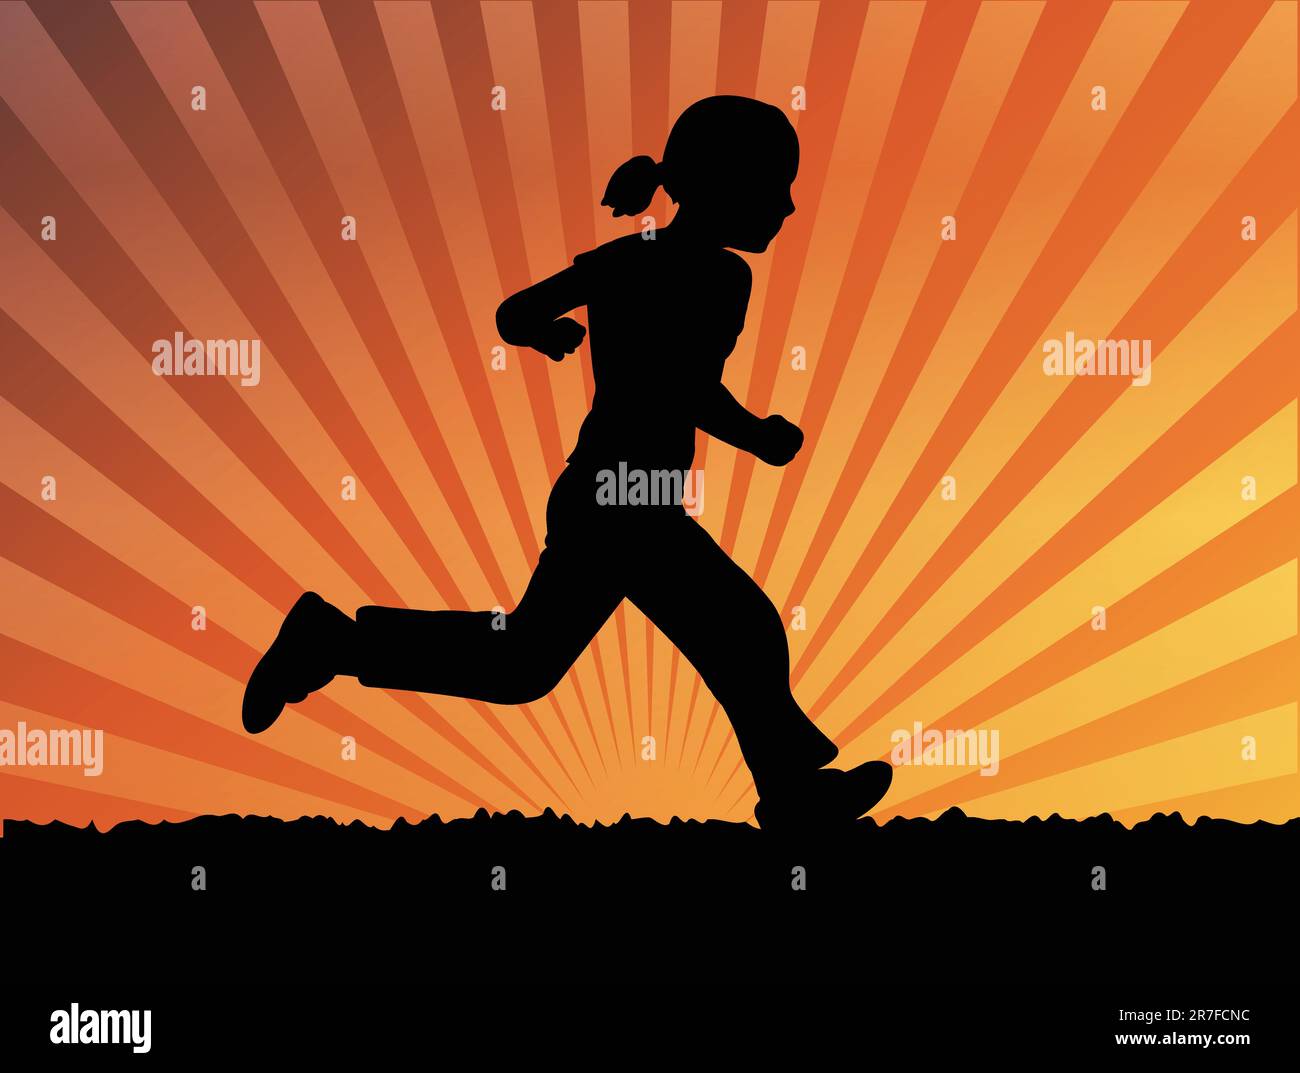 silhouette of little girl running - vector Stock Vector Image & Art - Alamy